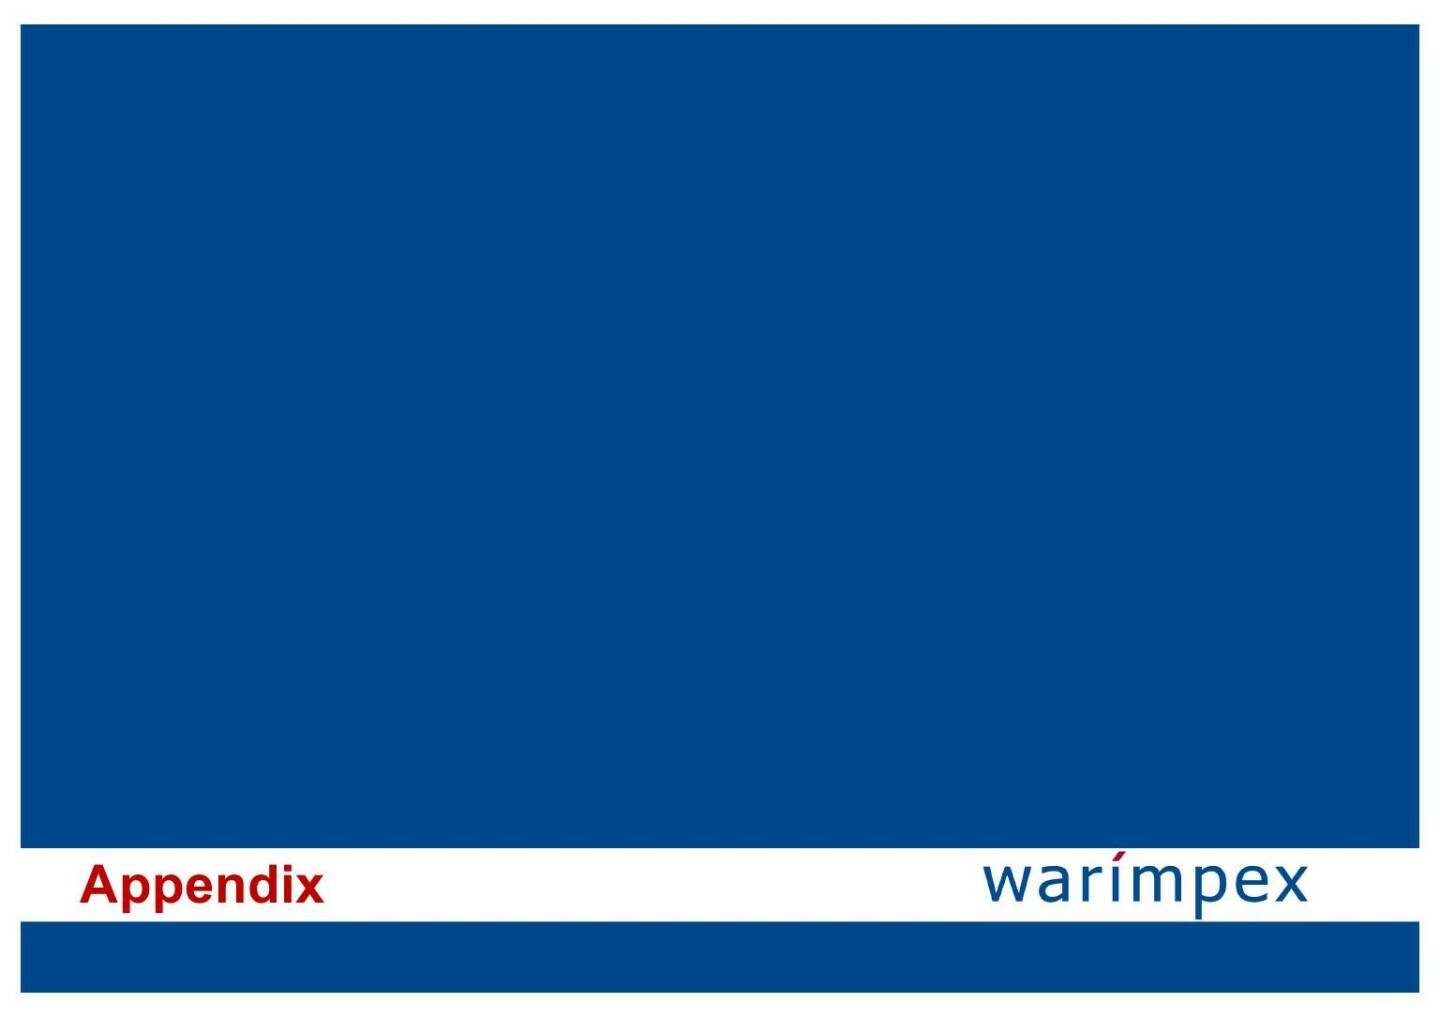 Warimpex - Appendix